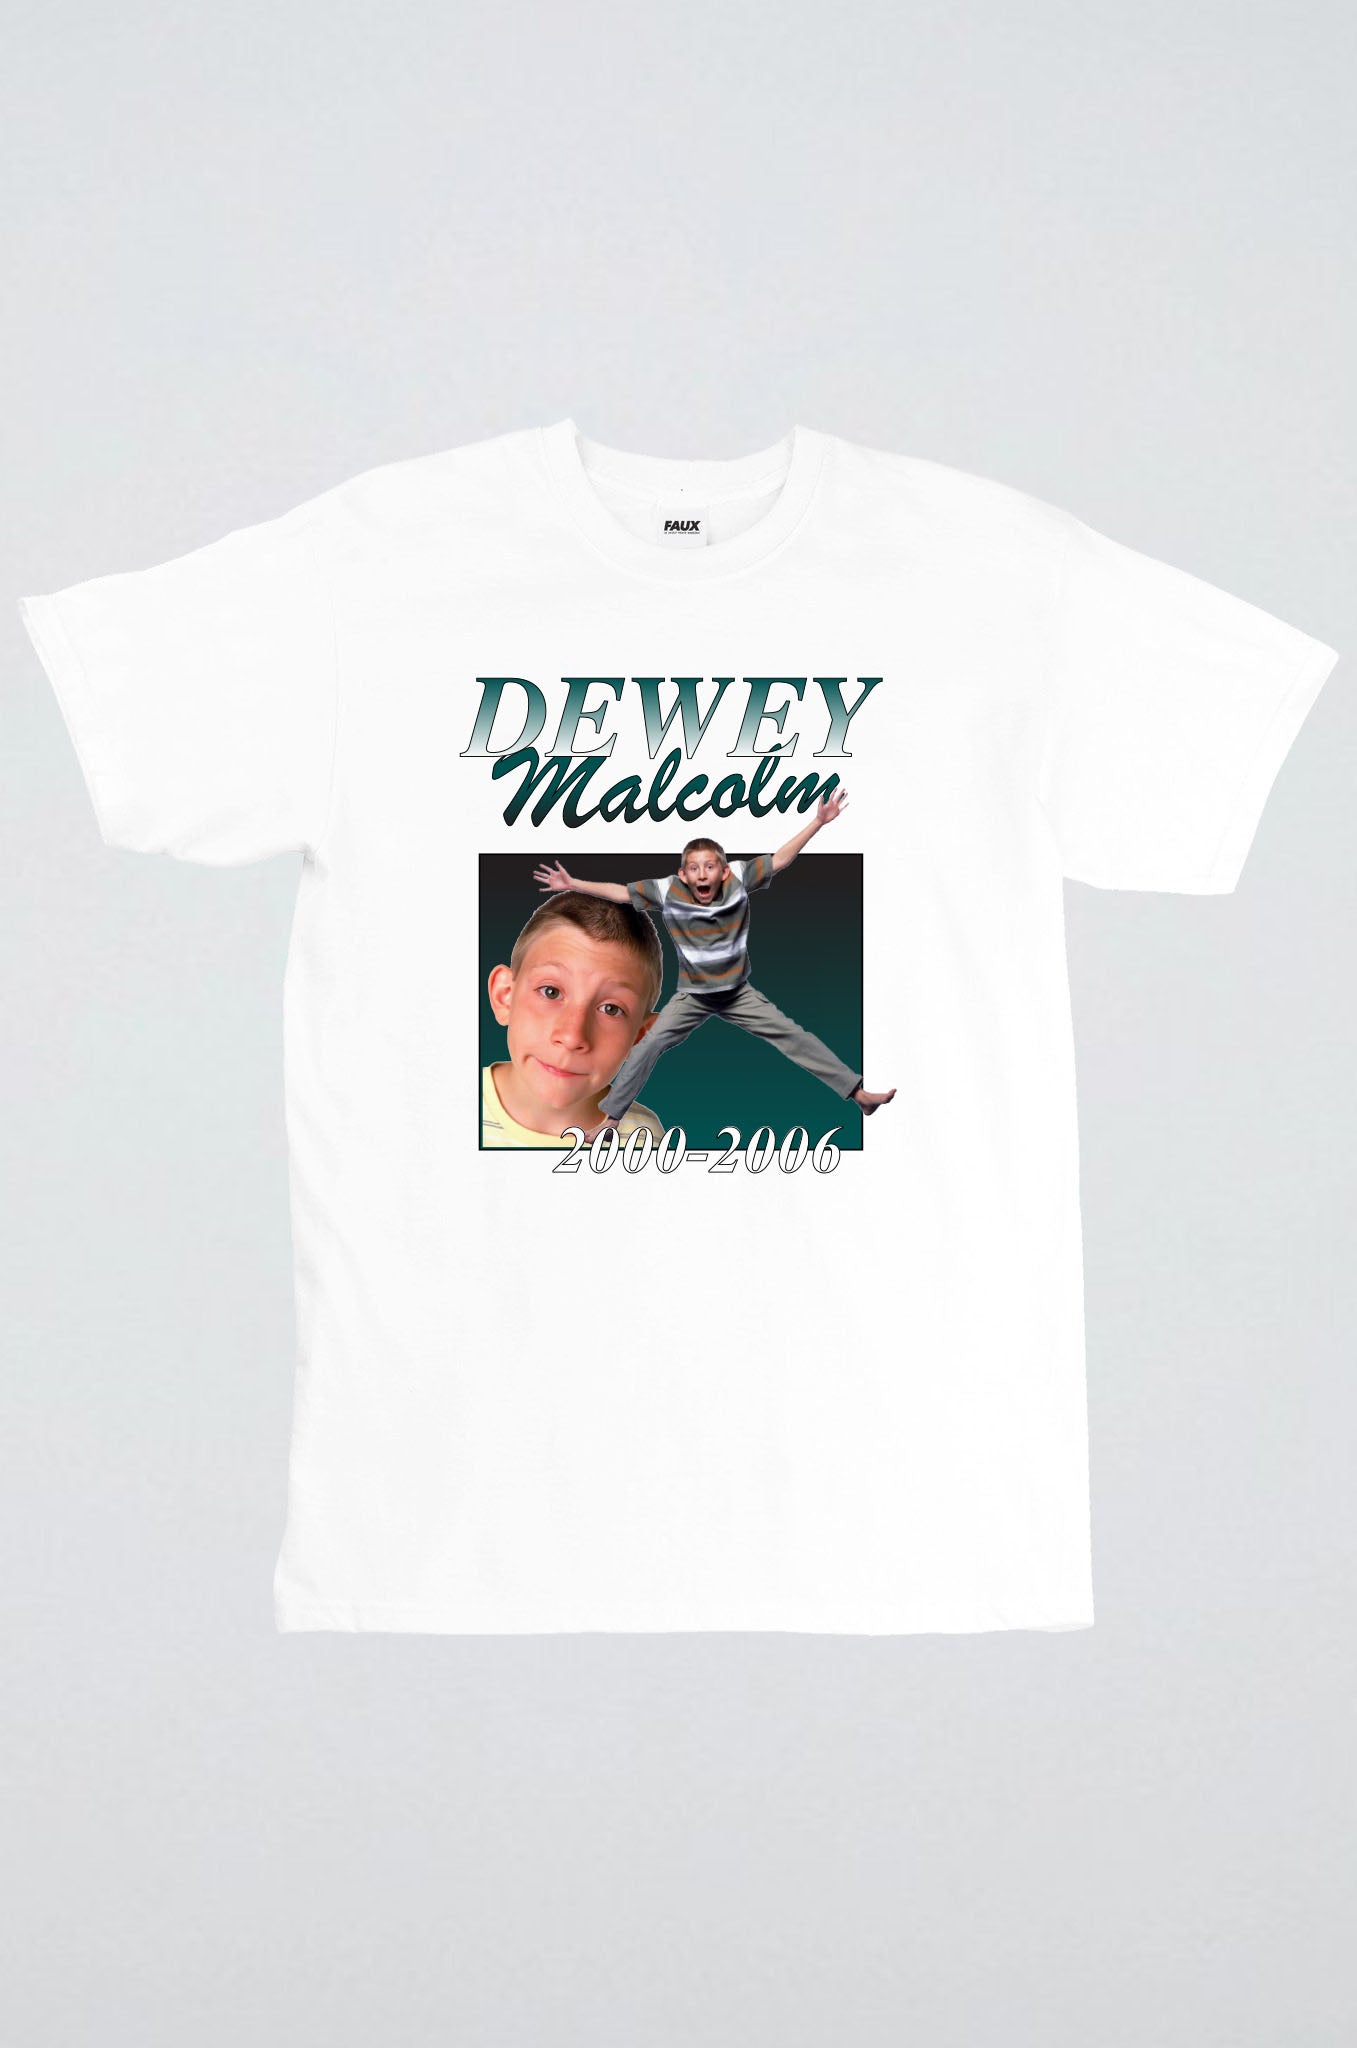 Dewey Malcolm 2